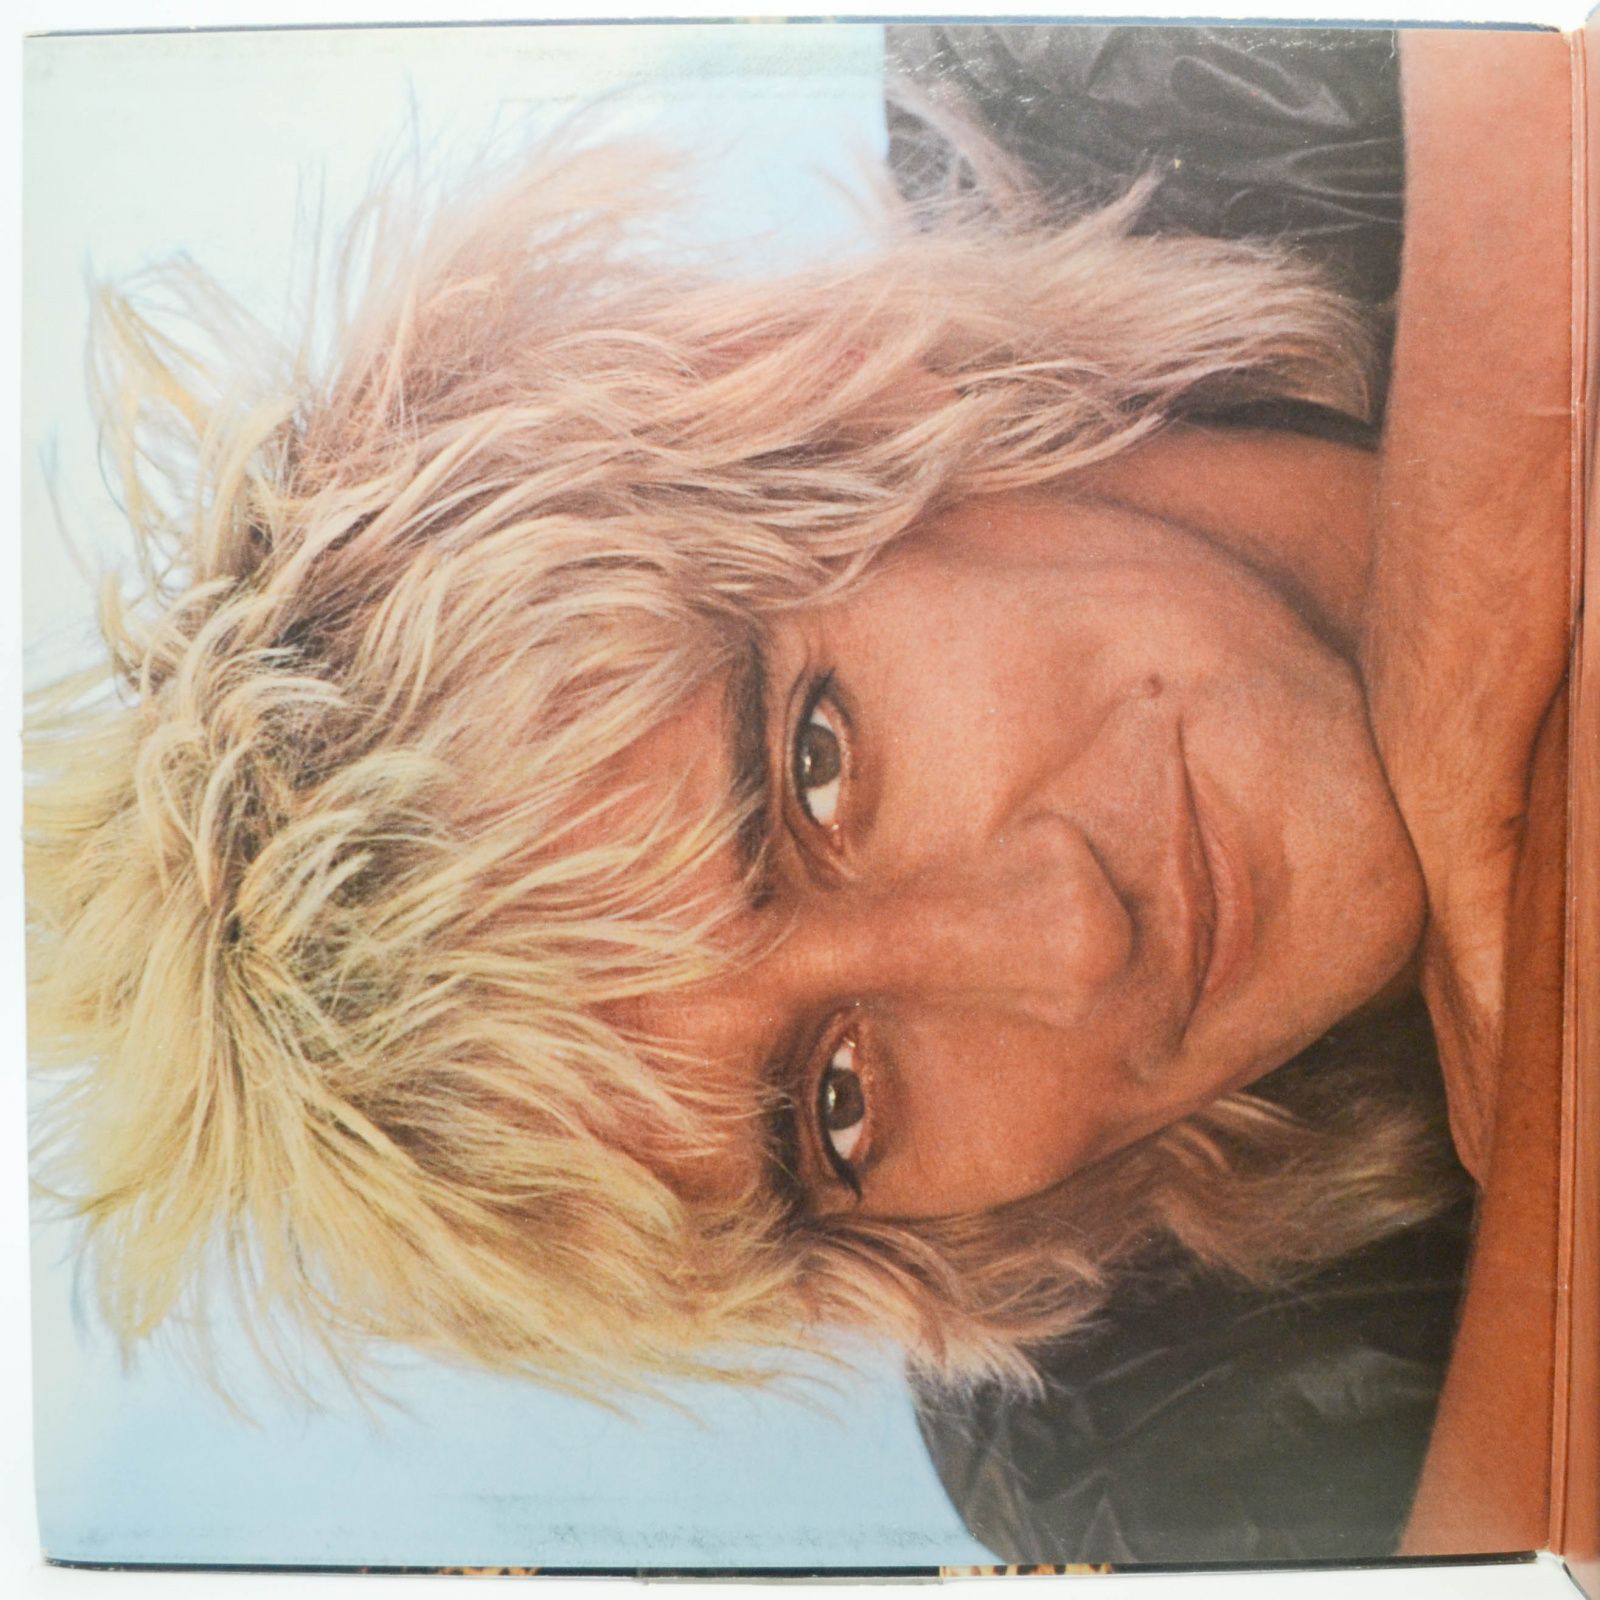 Rod Stewart — Blondes Have More Fun, 1978